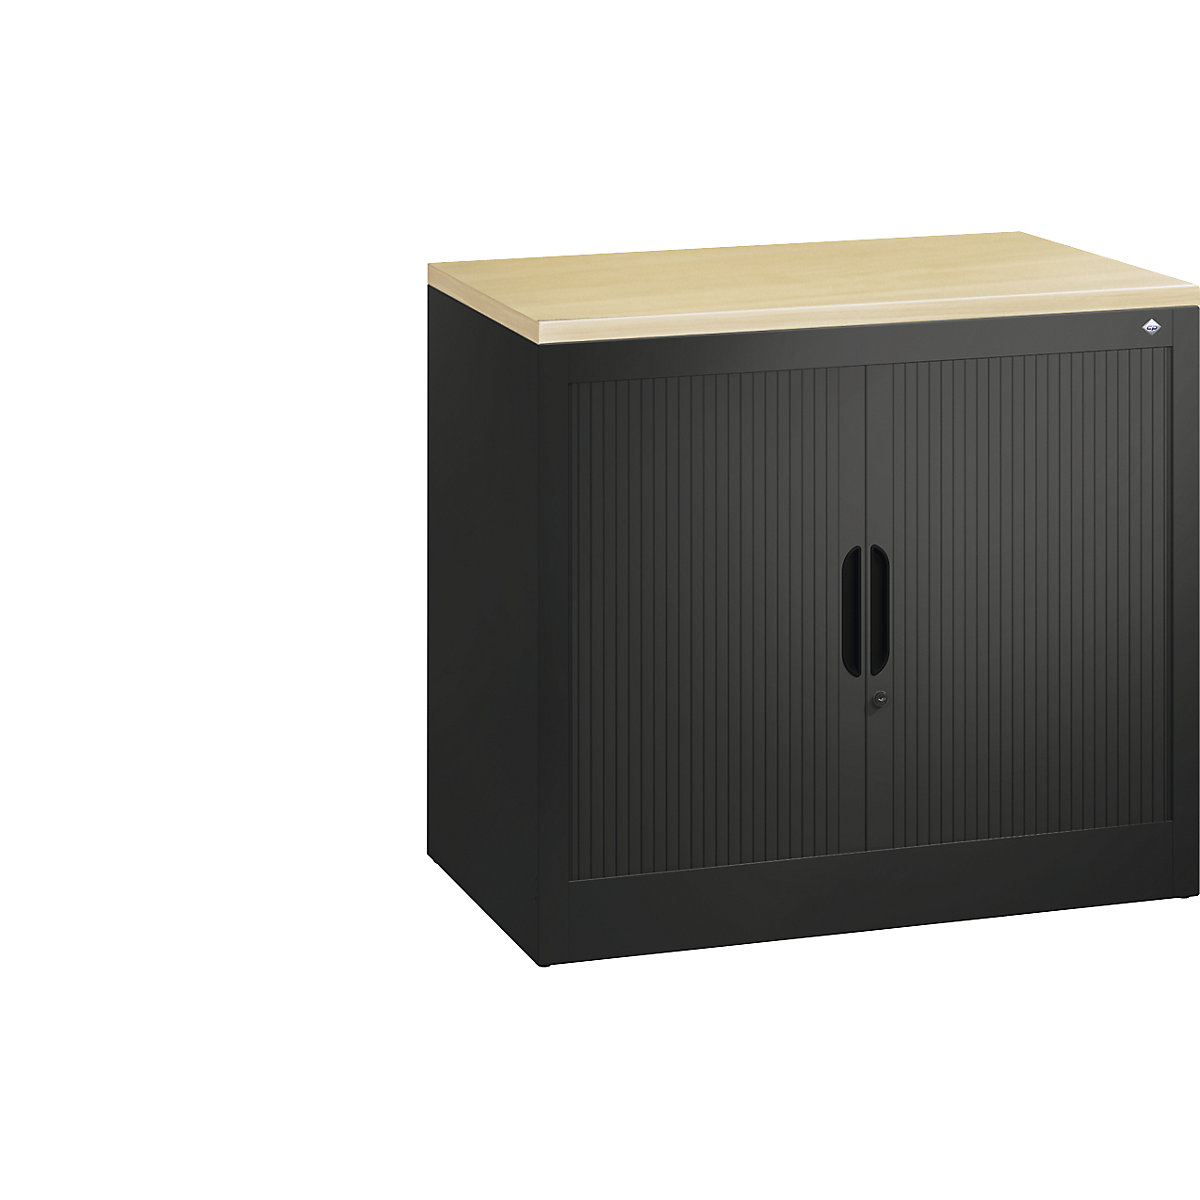 Žaluziová skříň s horizontální žaluzií – C+P, v x š x h 720 x 800 x 420 mm, 1 police, 1,5 výšky pořadačů, černošedá-6